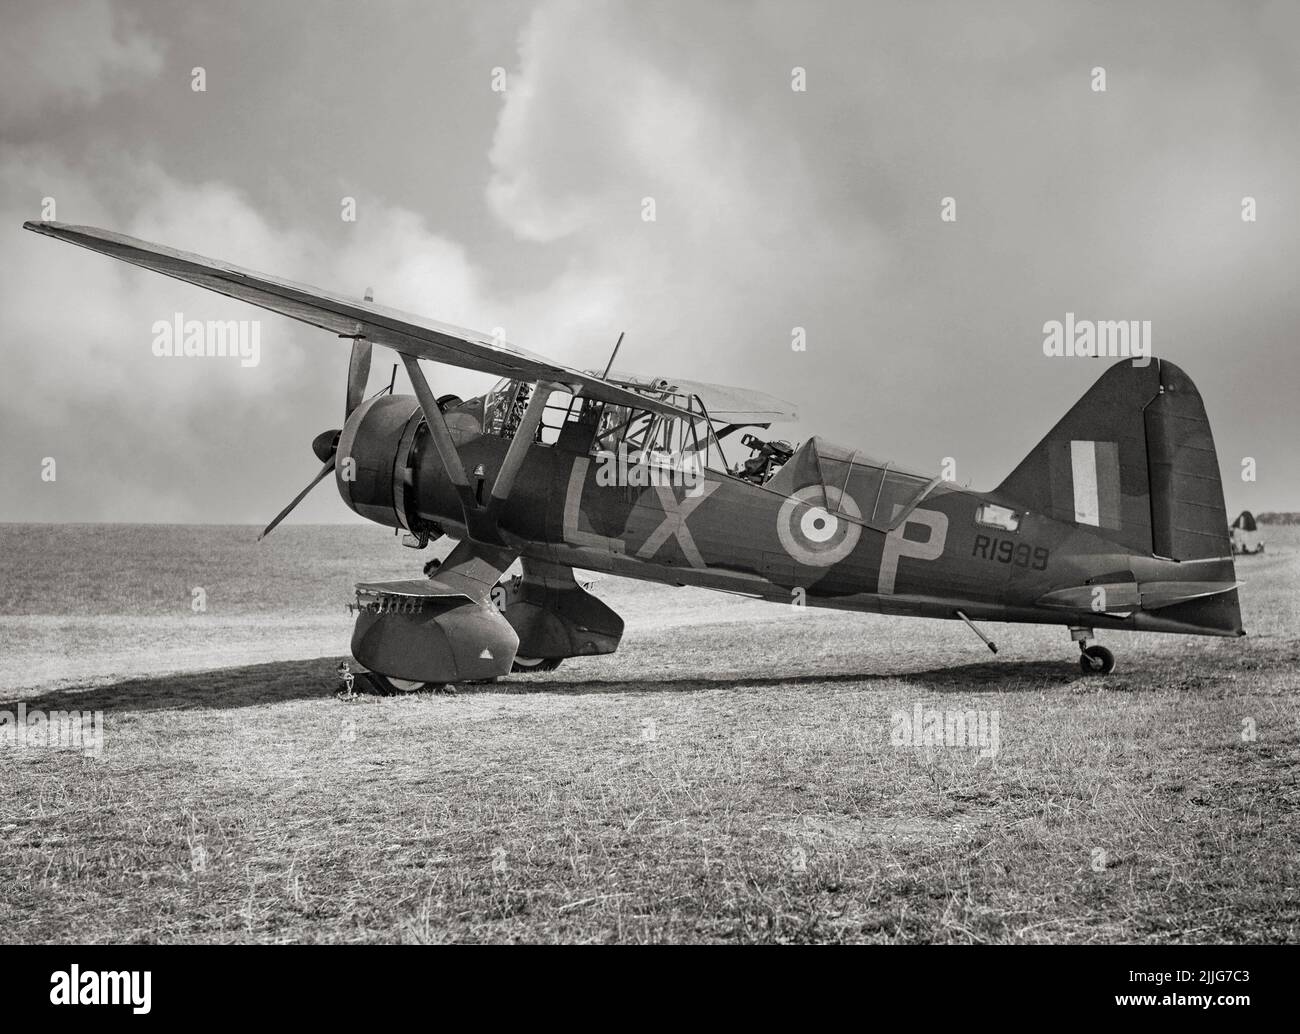 Ein Westland Lysander Mark II von No. 225 Squadron RAF, der in Tilshead, Wiltshire, gewartet wird. Beachten Sie das einzelne Lewis Mark III Maschinengewehr auf seiner Fairey Halterung im hinteren Cockpit. Das Flugzeug war ein Kooperations- und Verbindungsflugzeug der britischen Armee, das unmittelbar vor und während des Zweiten Weltkriegs eingesetzt wurde. Nachdem das Flugzeug in der Funktion der Zusammenarbeit der Armee obsolet wurde, ermöglichte es die Kurzfeldleistung des Flugzeugs heimliche Missionen, die kleine, improvisierte Flugstreifen hinter feindlichen Linien benutzten, um Agenten zu platzieren oder zurückzugewinnen, insbesondere im besetzten Frankreich. Stockfoto